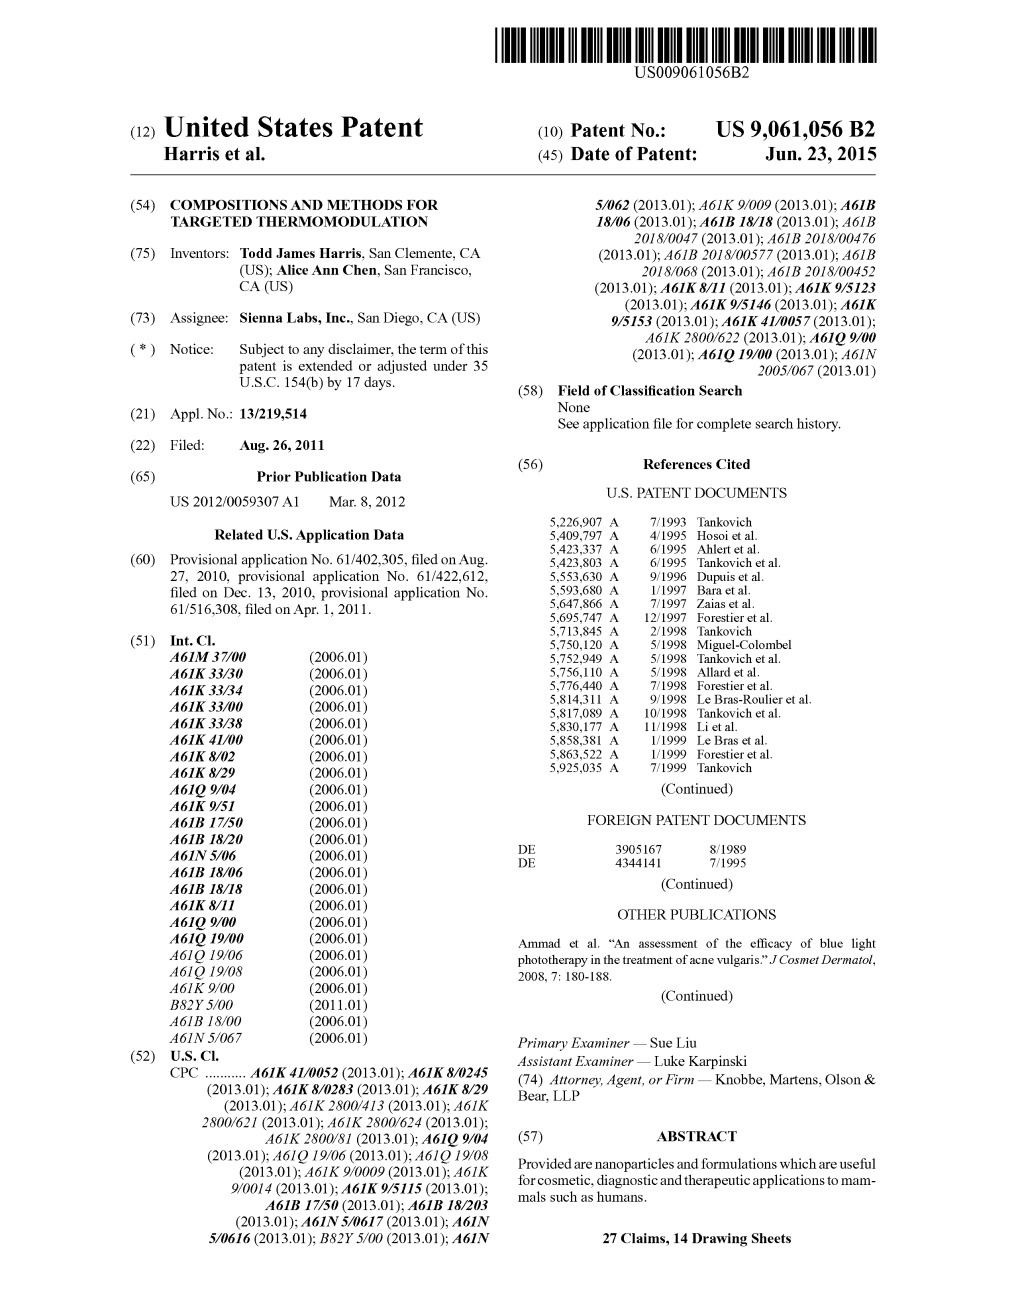 (12) United States Patent (10) Patent No.: US 9,061,056 B2 Harris Et Al